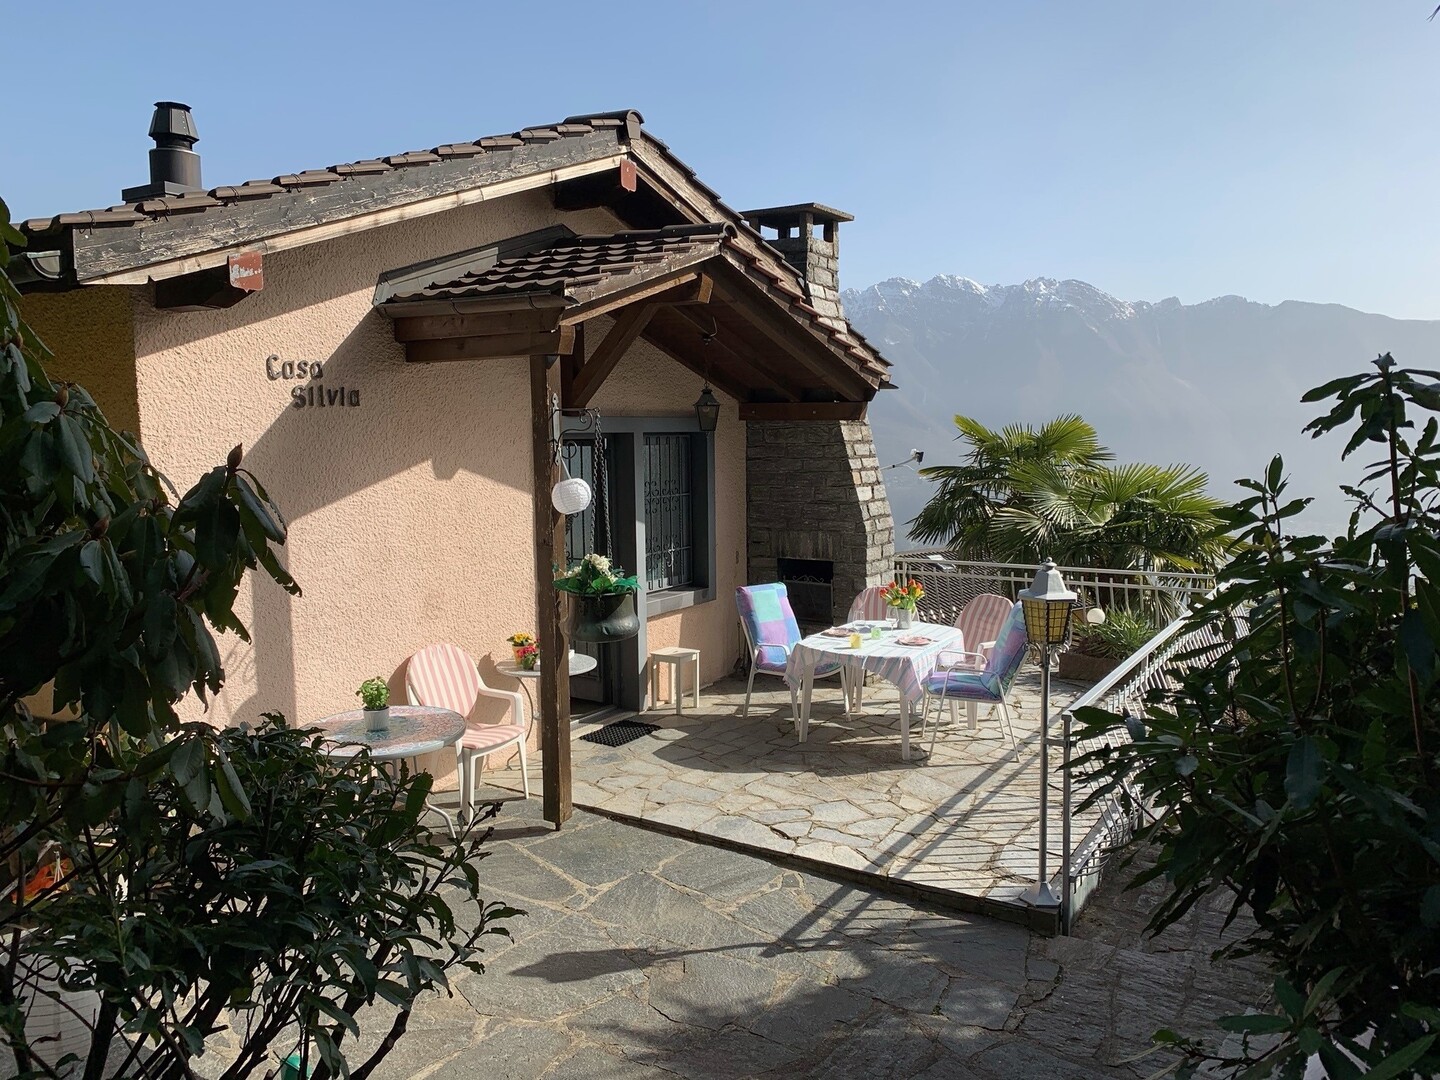 3 locali, casa di vacanza 'Casa Silvia', Via Botanico 11, Carona, Lago di Lugano